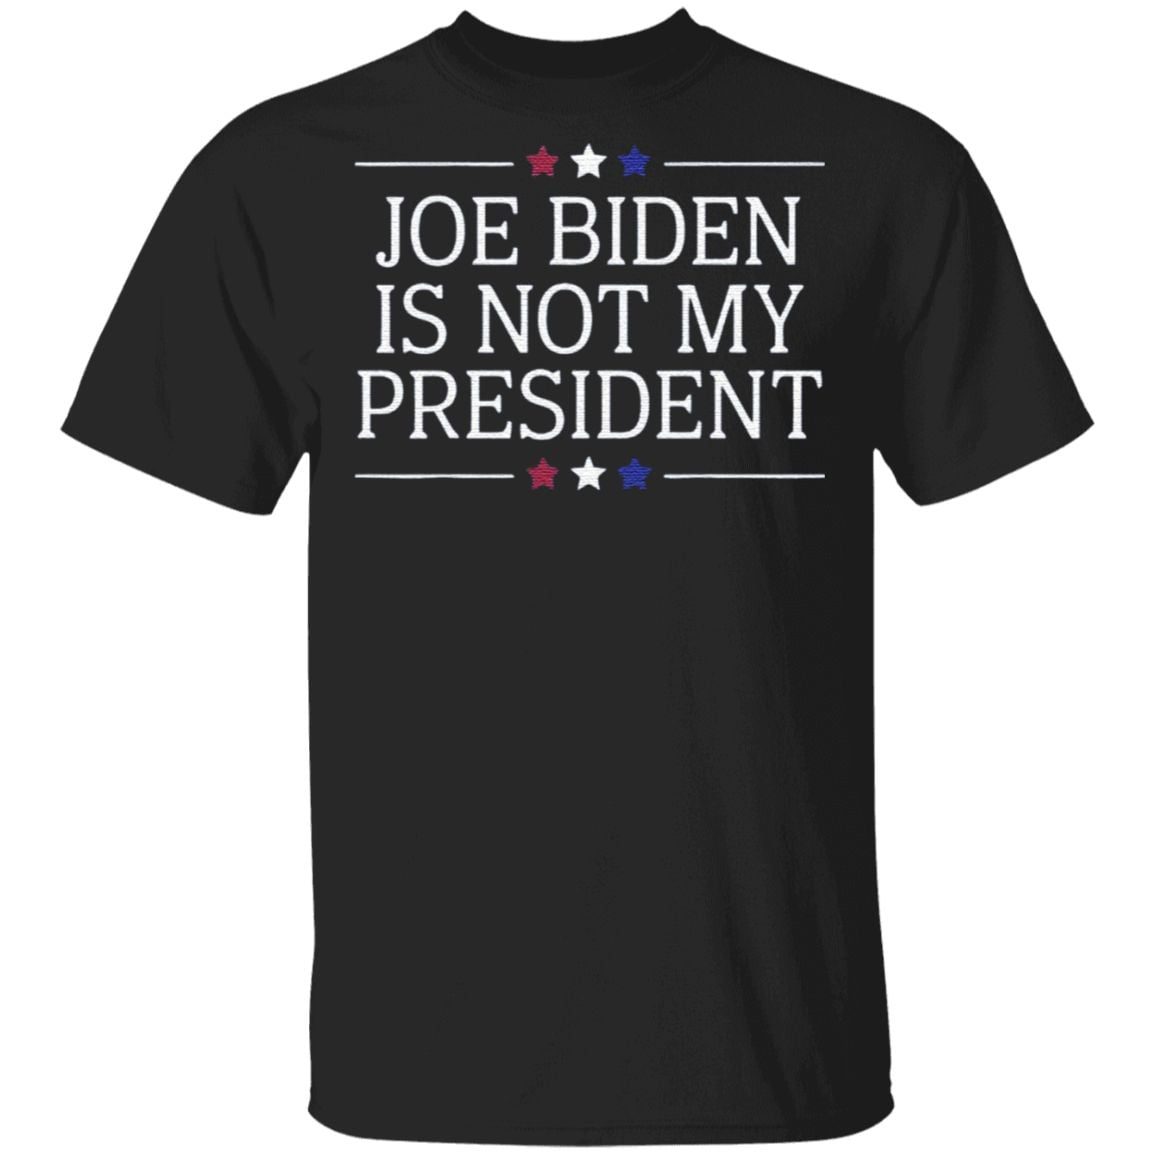 Joe Biden Is Not My President shirt